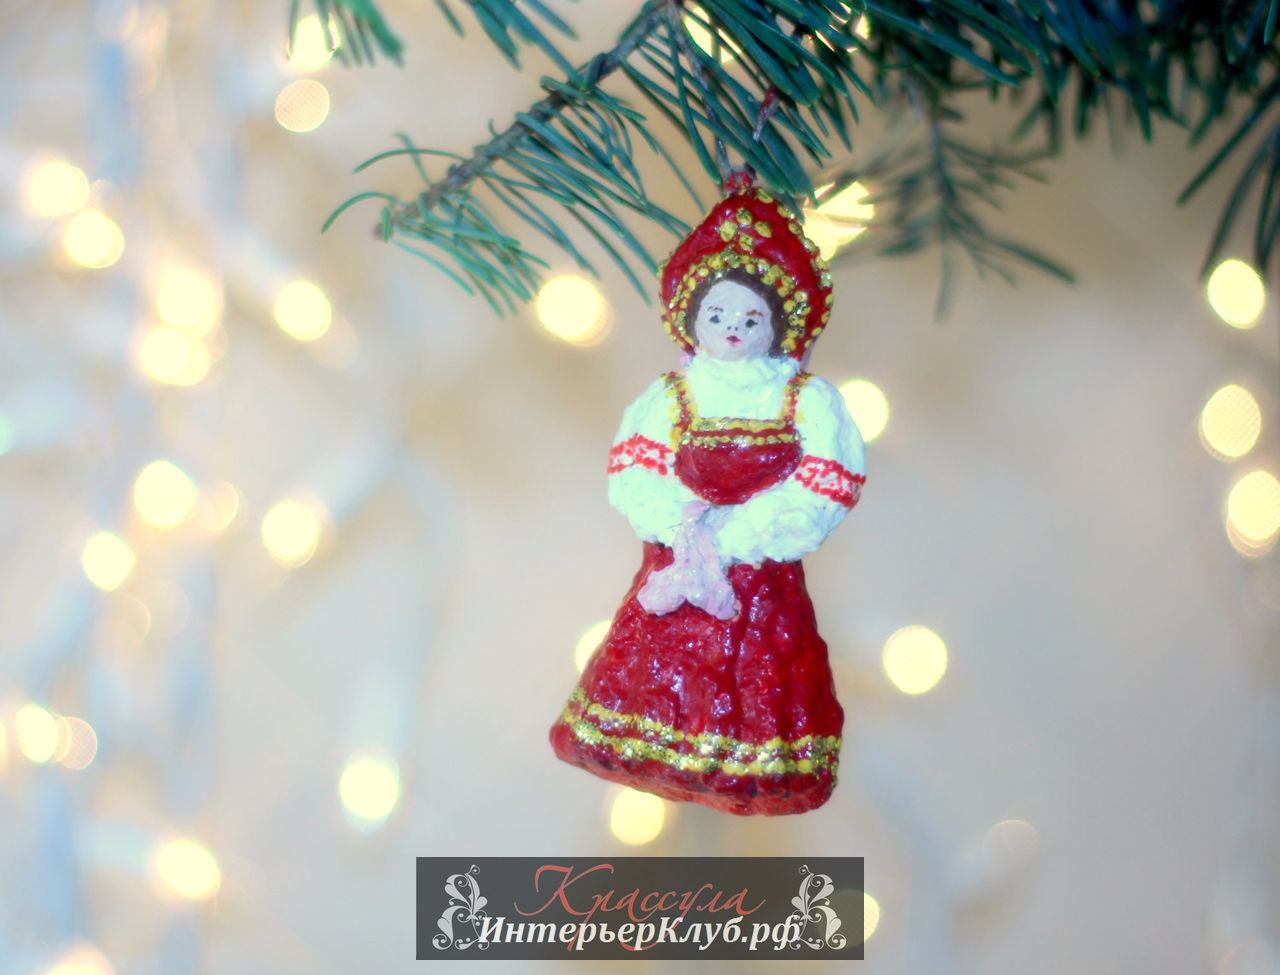 13 Украшение новогодней елки в русском стиле, елочные игрушки в русском стиле